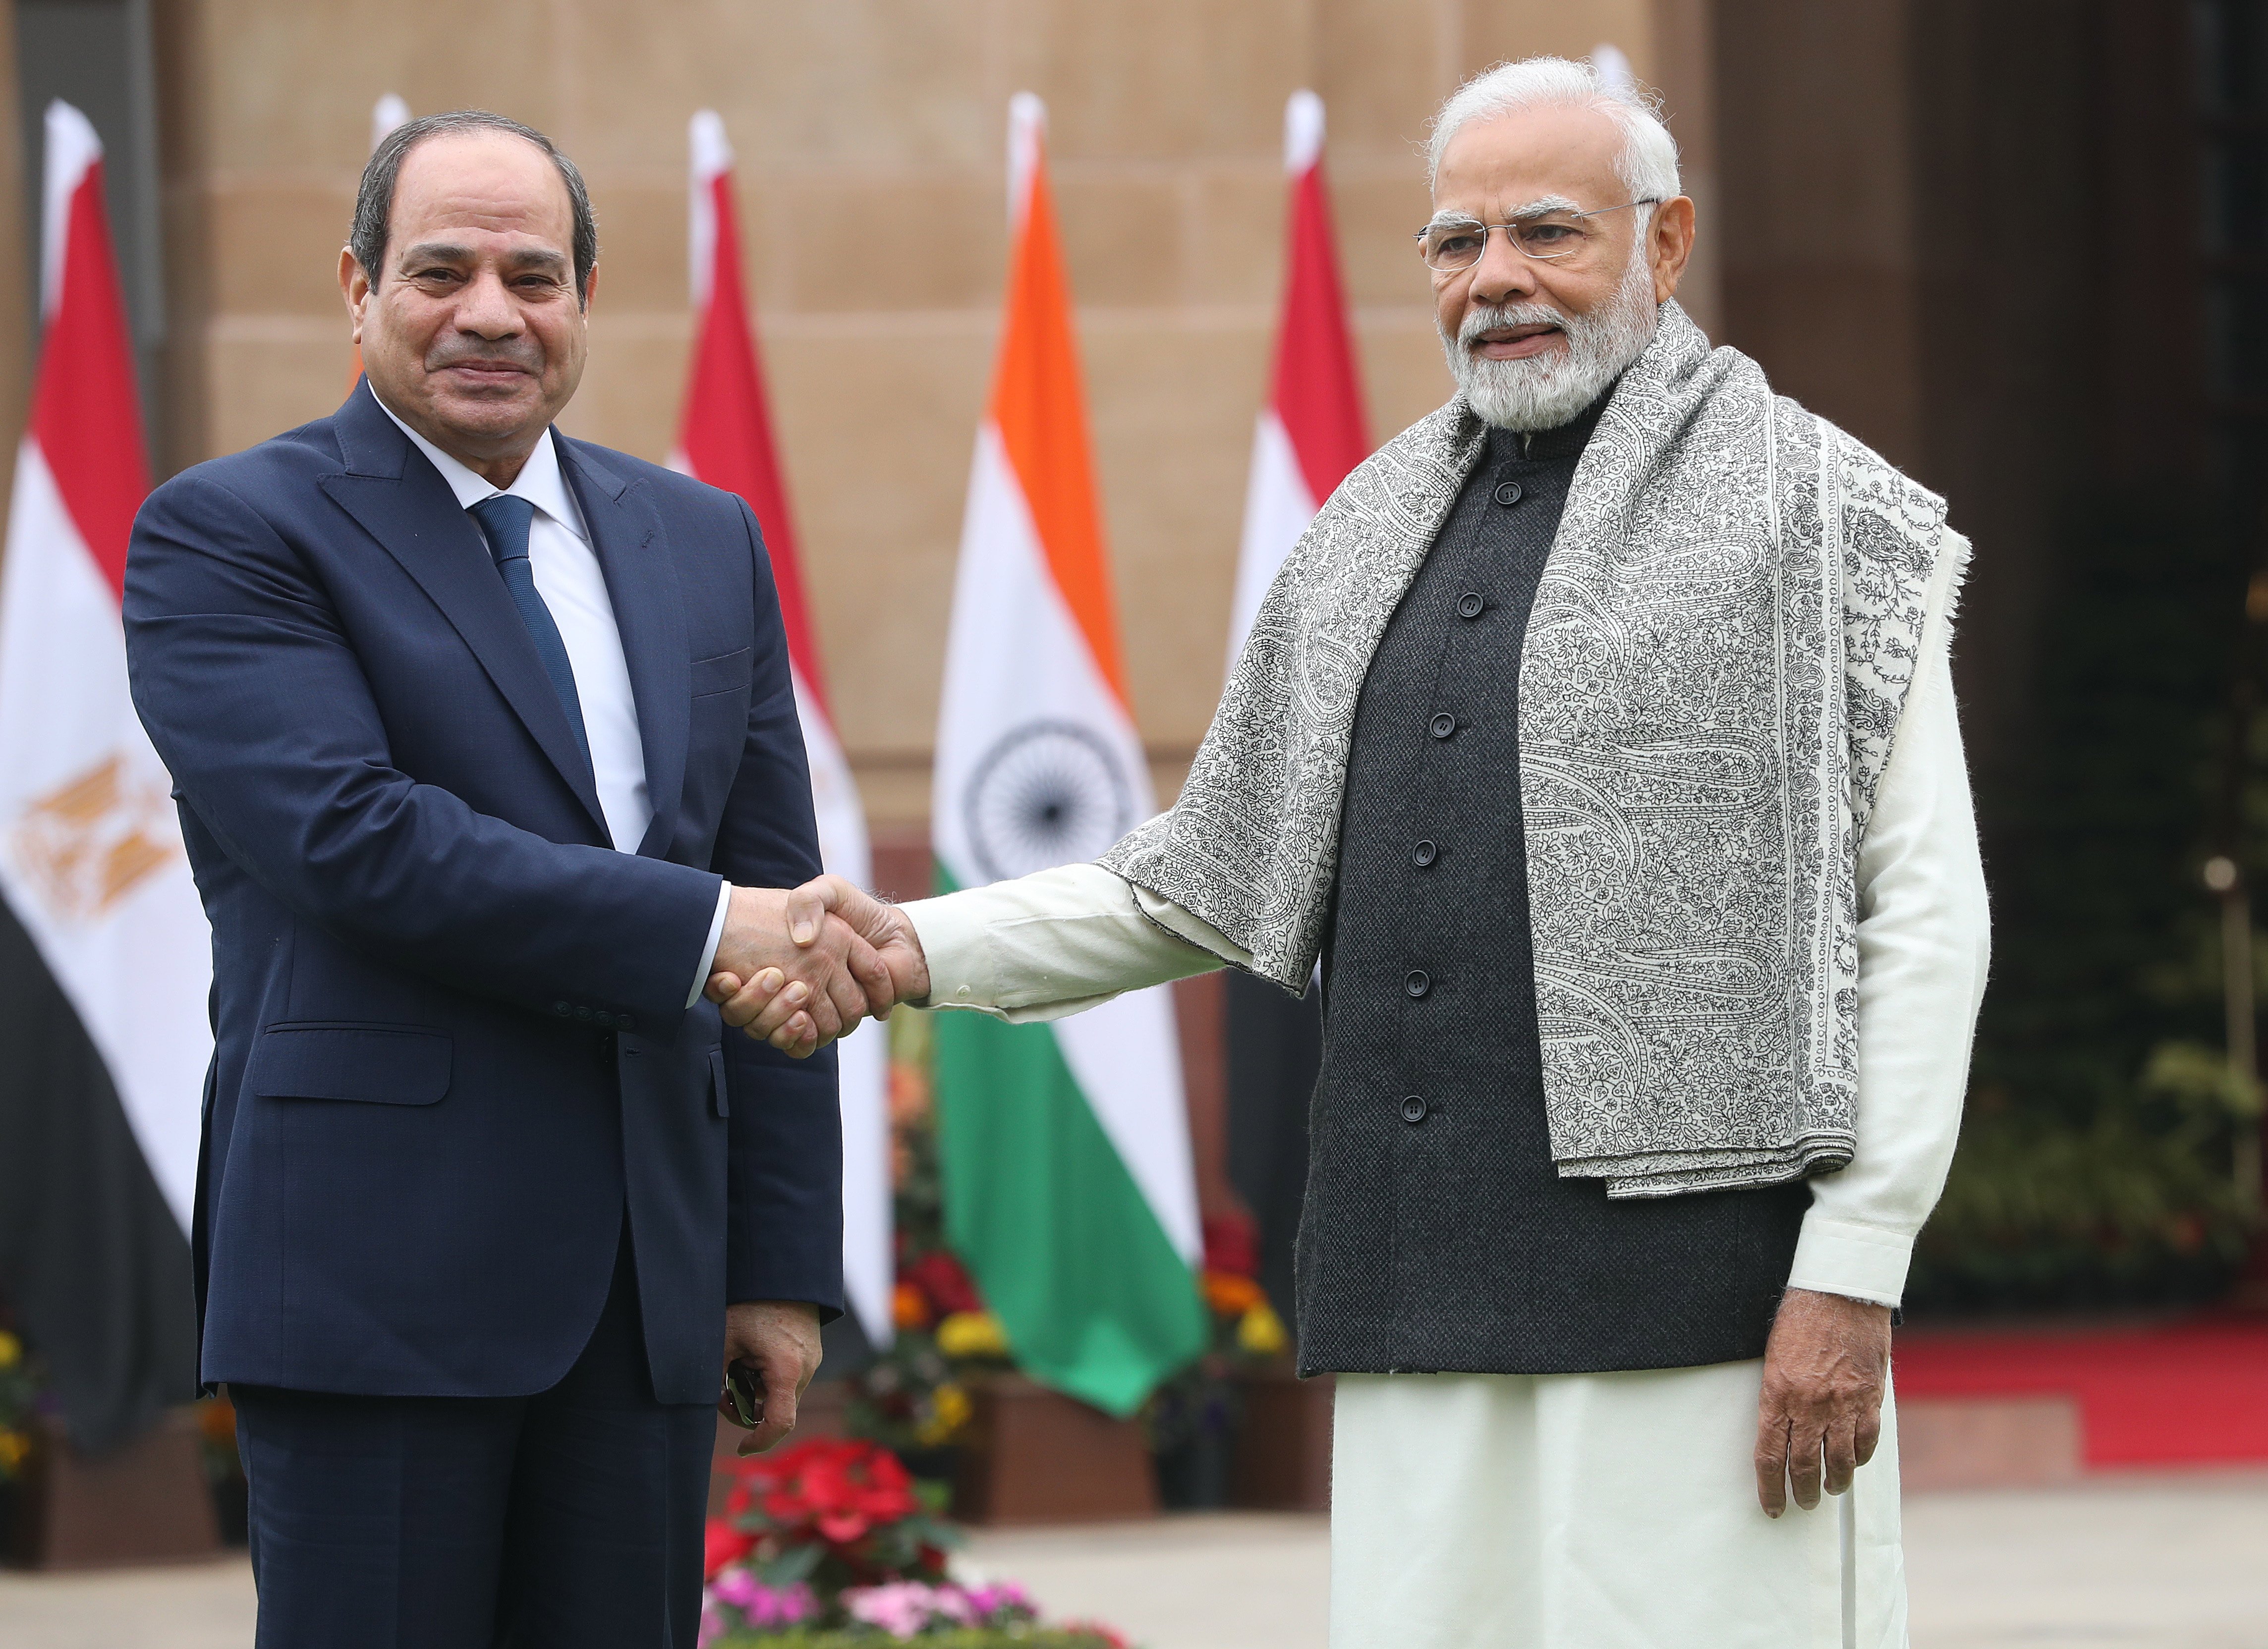 Egipte vol refer ponts amb l'Índia: què se'n pot esperar?